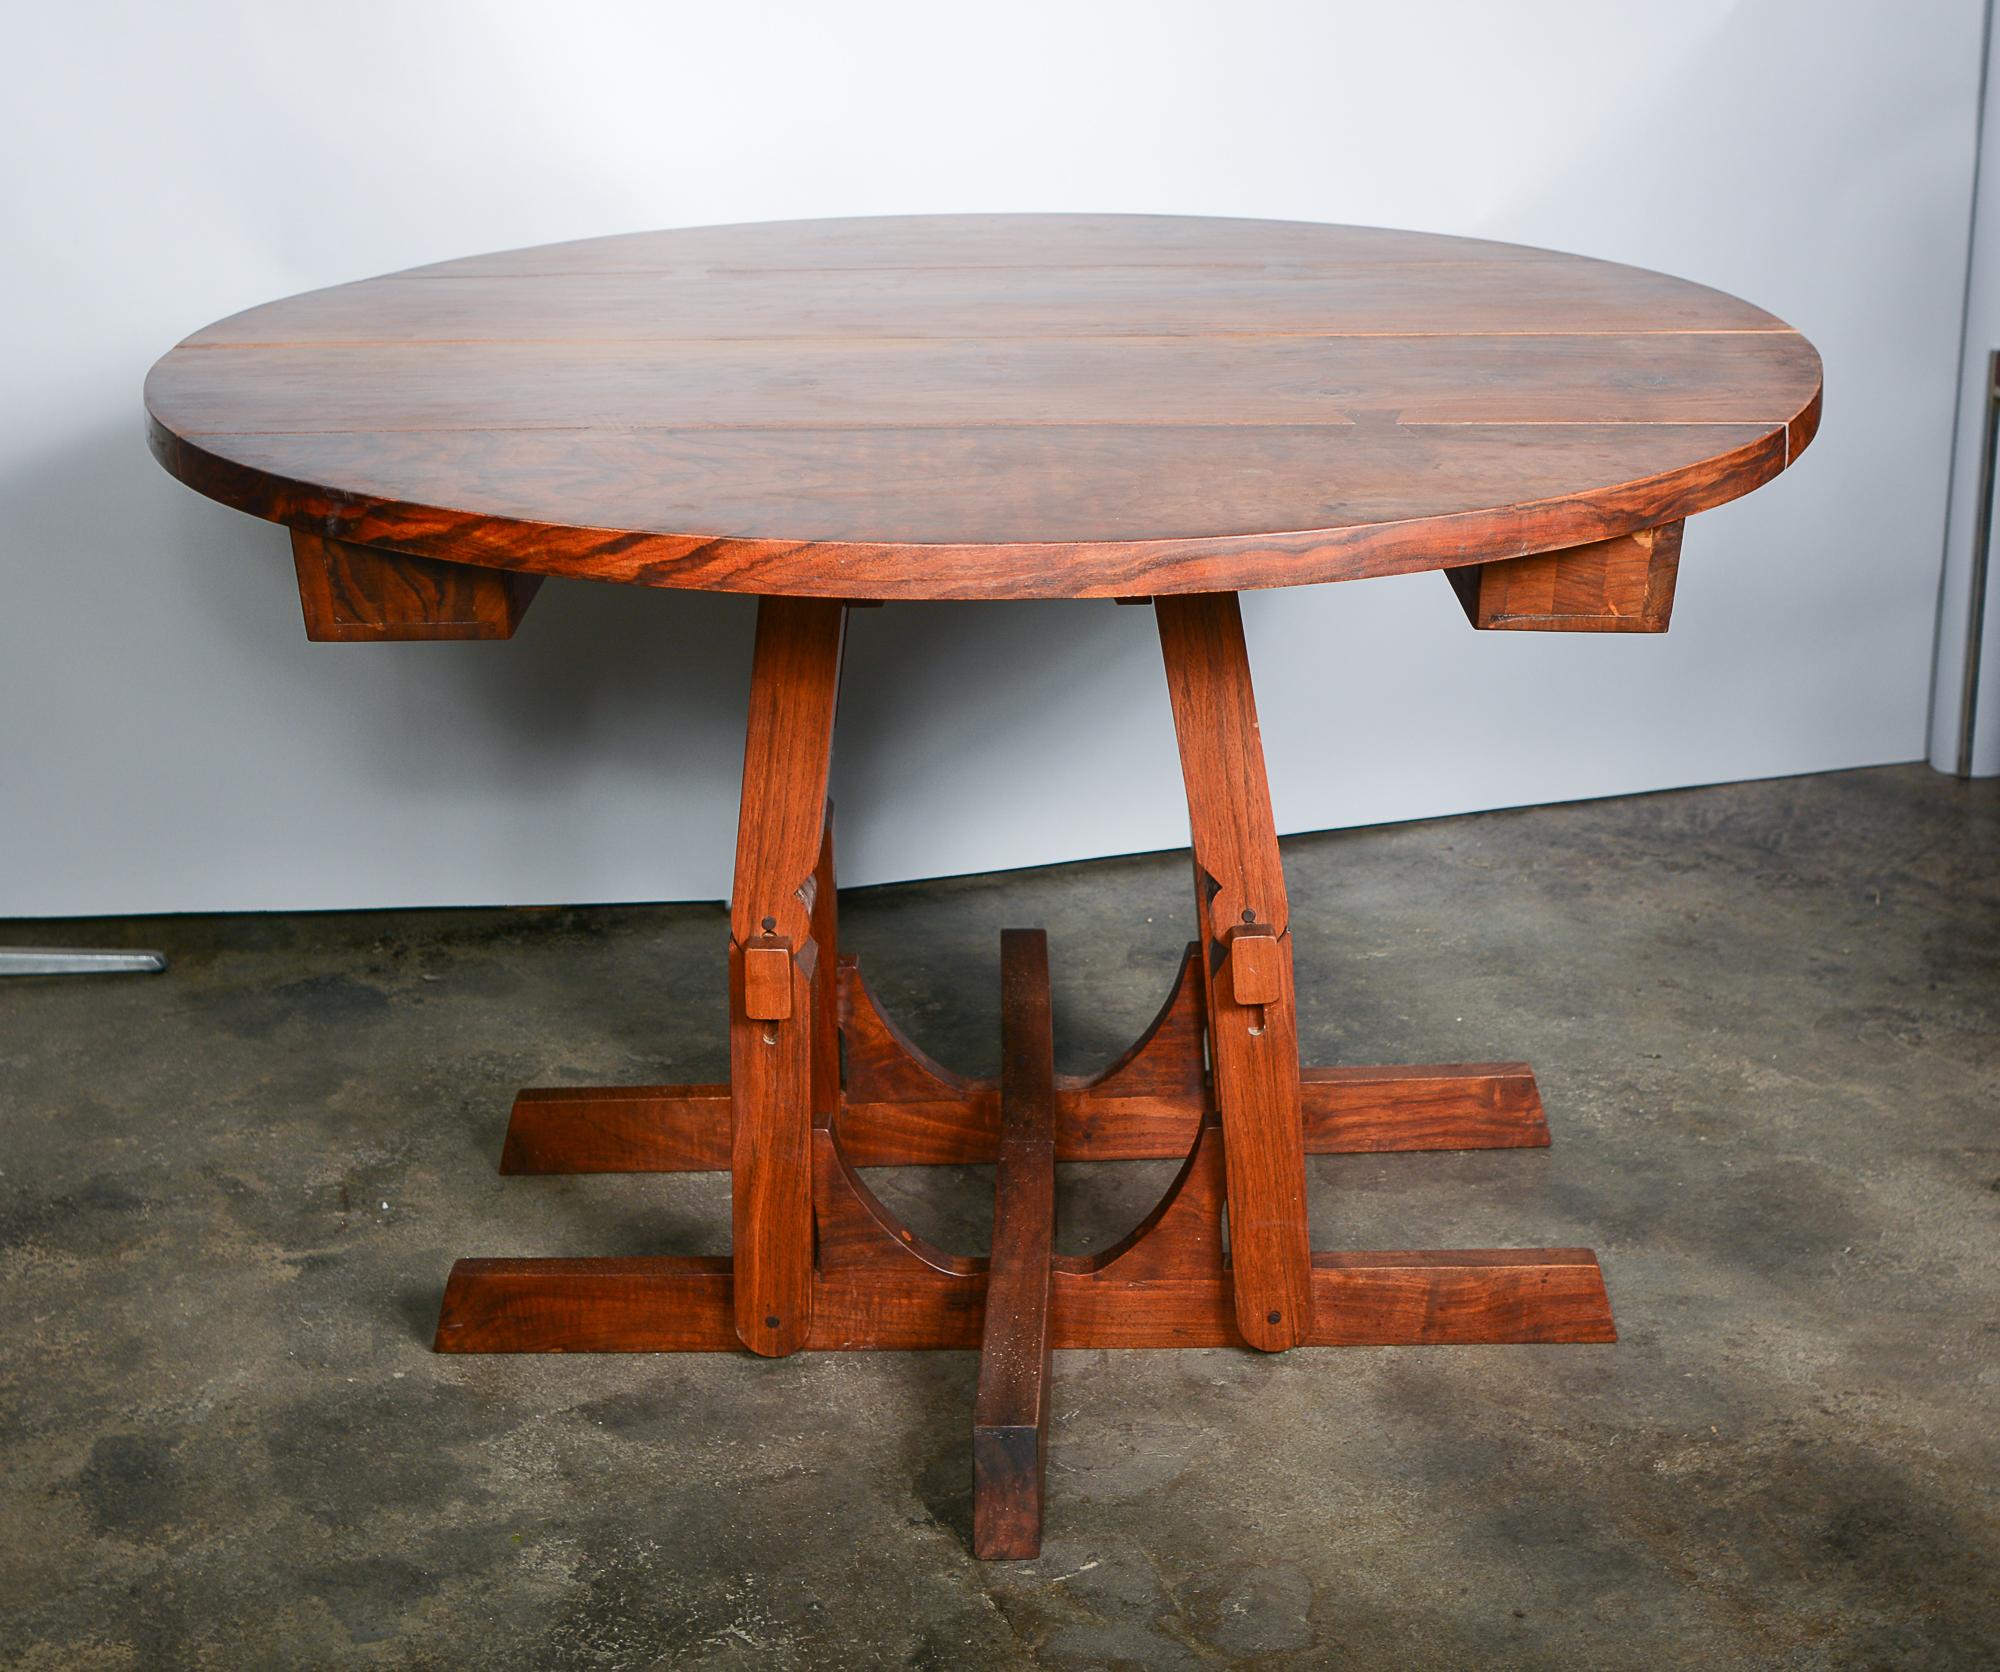 Esstisch aus massivem Nussbaumholz vom Möbeldesigner und -hersteller Morris Sheppard. Dieser Tisch lässt sich mit vier Blättern auf bis zu 8 Fuß erweitern. Wir glauben, dass es sich um eine Sonderanfertigung für den Kunden handelt, da der Tisch auch